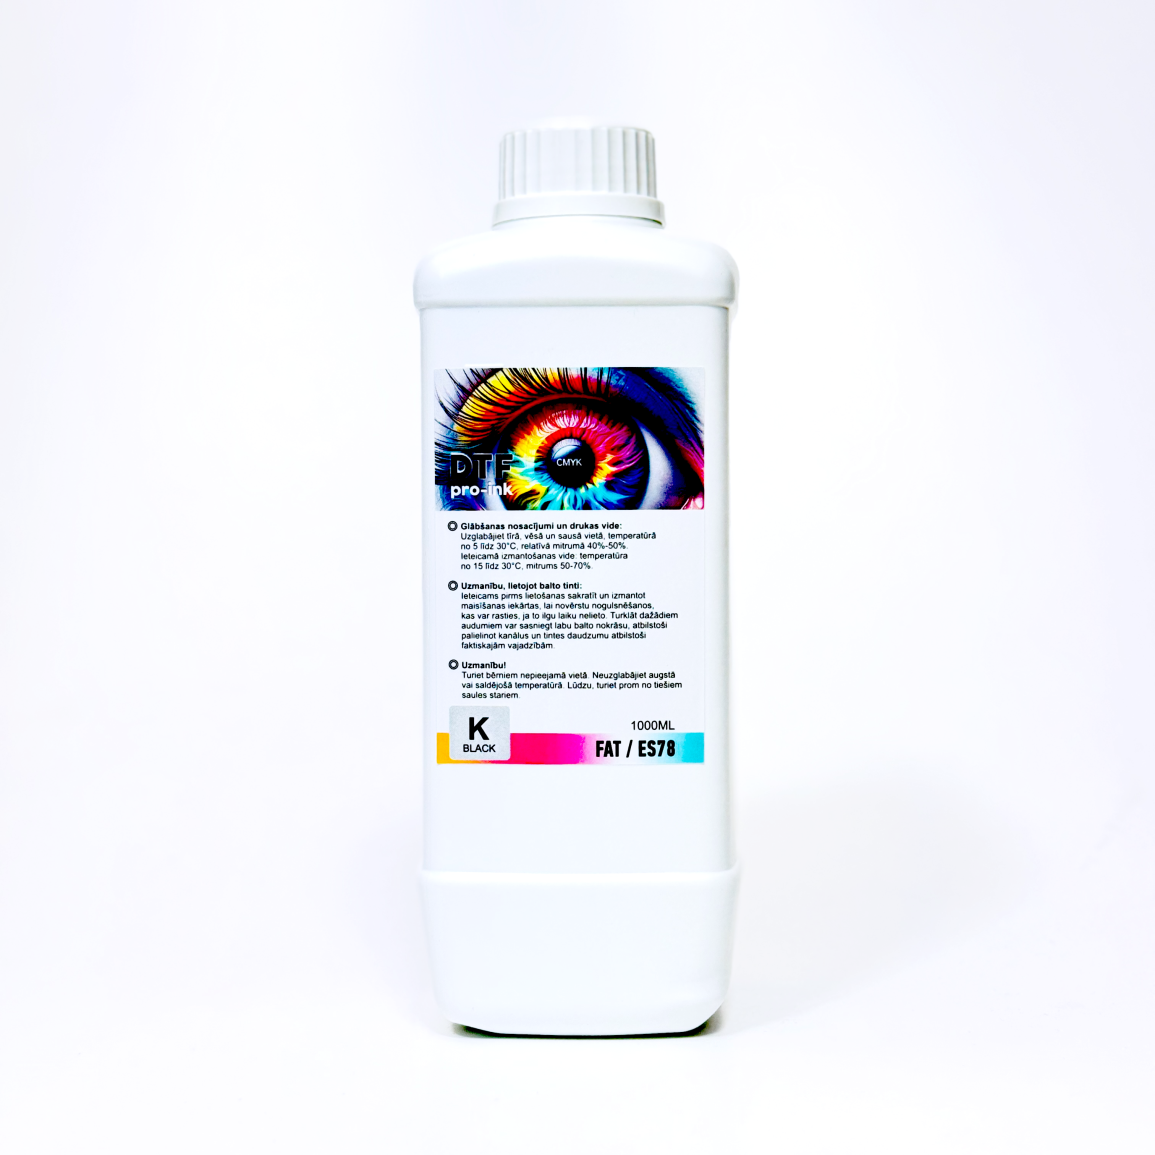 DTF krāsa viena litra pudelē 1L. Melna tintes krāsa Key. Balta necaurspīdīga pudele, droša prret gaismas iedarbību uz tintes pigmentu.